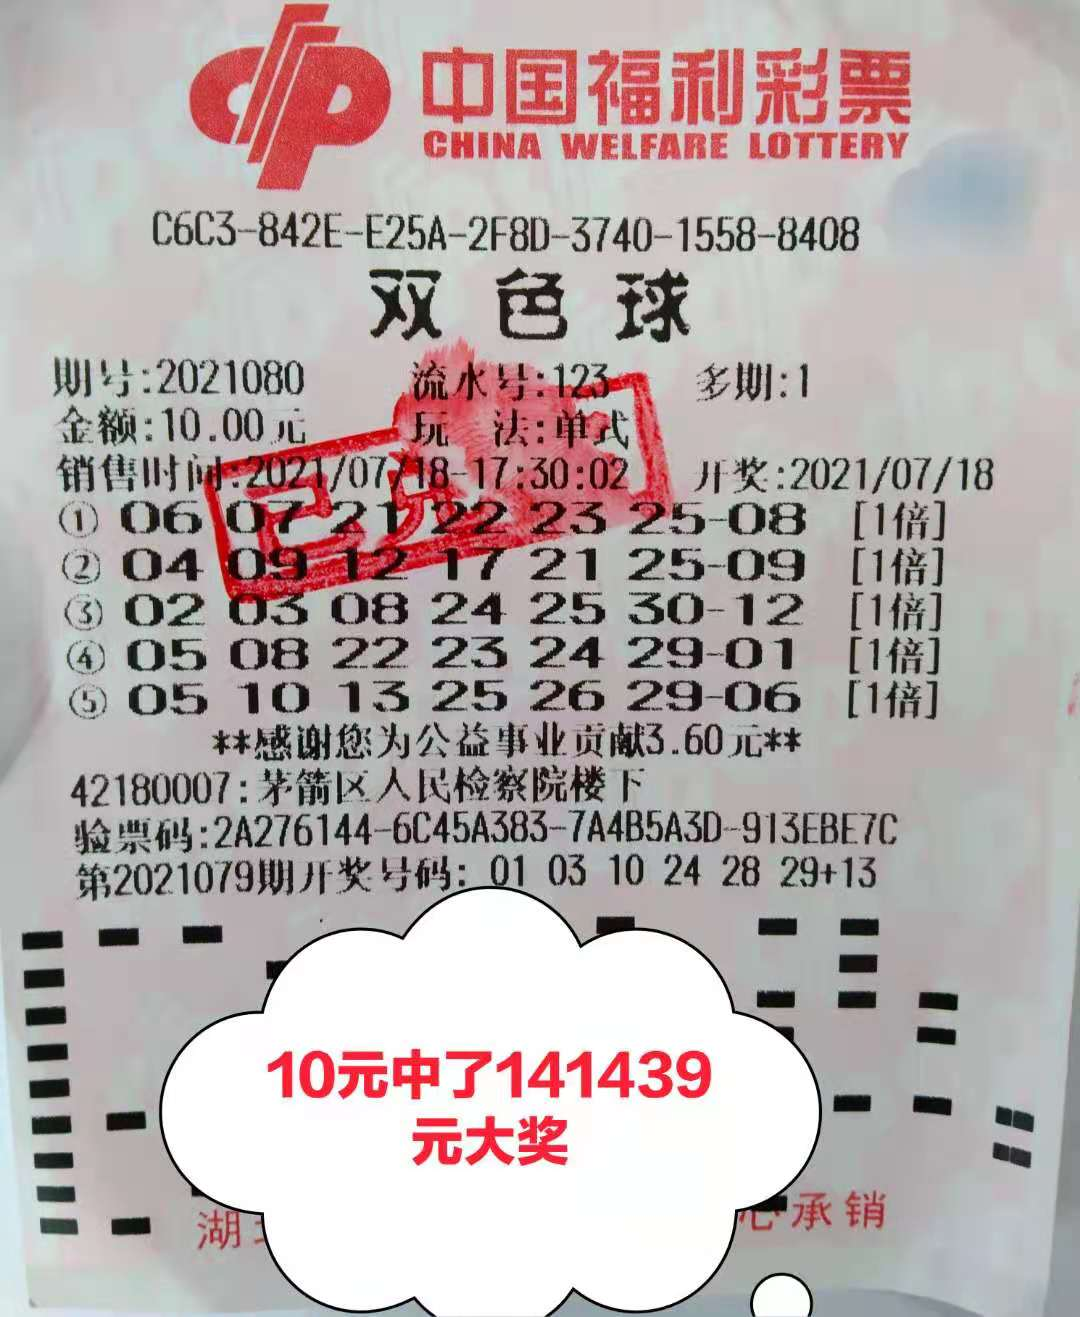 【兑奖直击】10元机选:喜中双色球14万元大奖 - 湖北